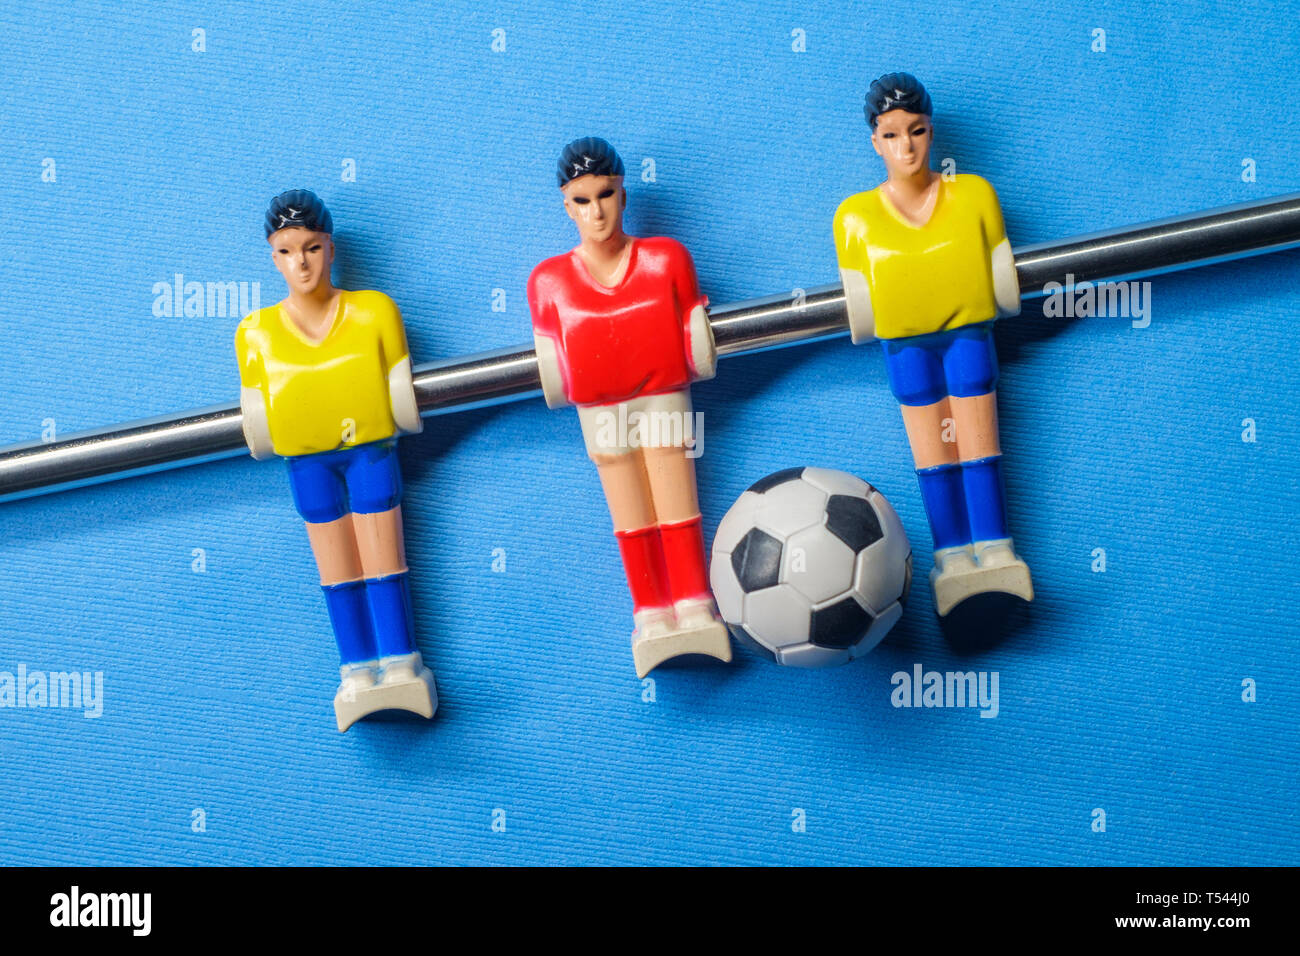 Closeup makro Tabelle - obere Partie Tischfußball oder Kicker mit Fußball Stockfoto